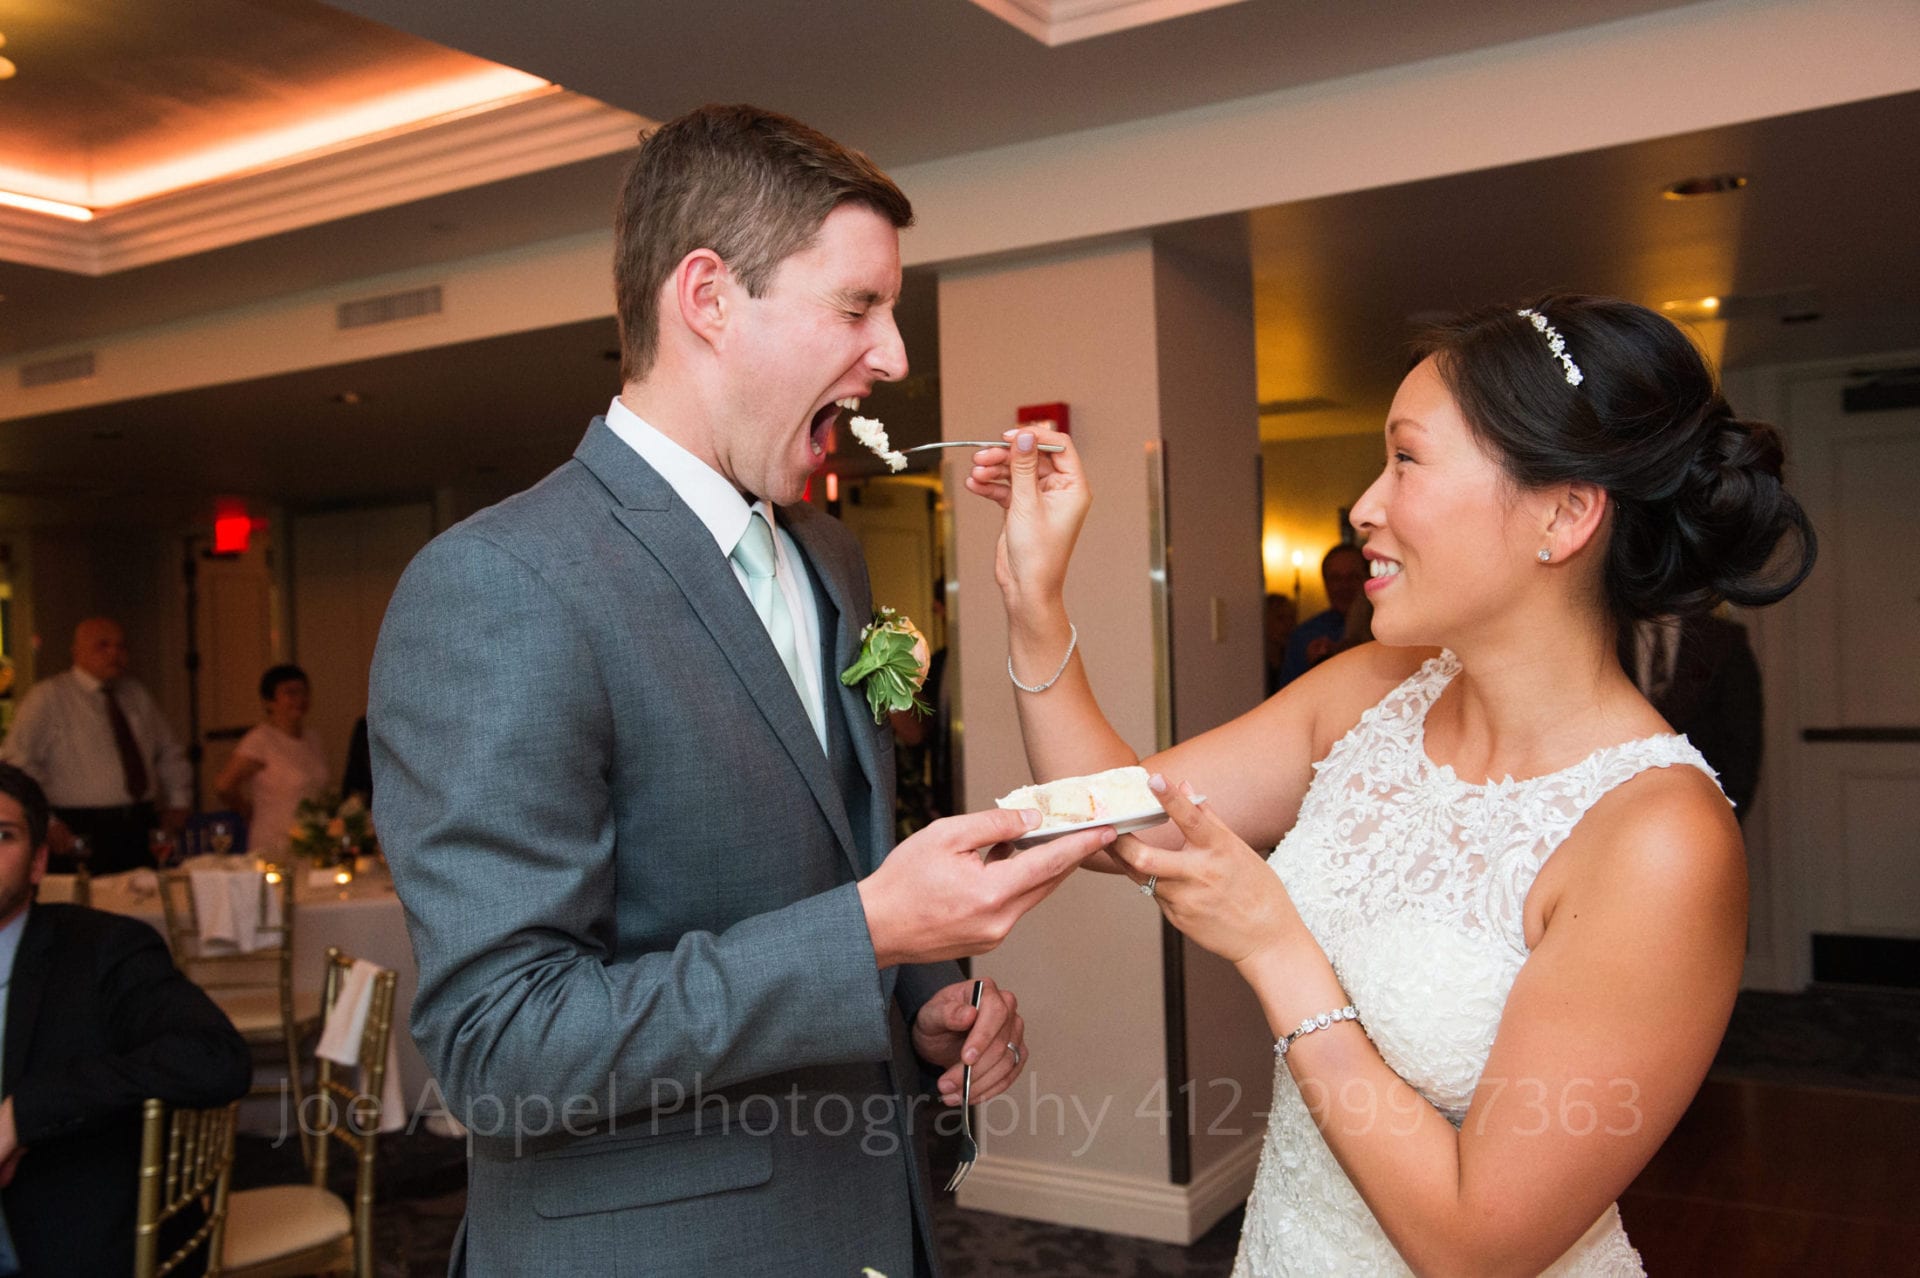 a bride feeds her groom a piece of cake